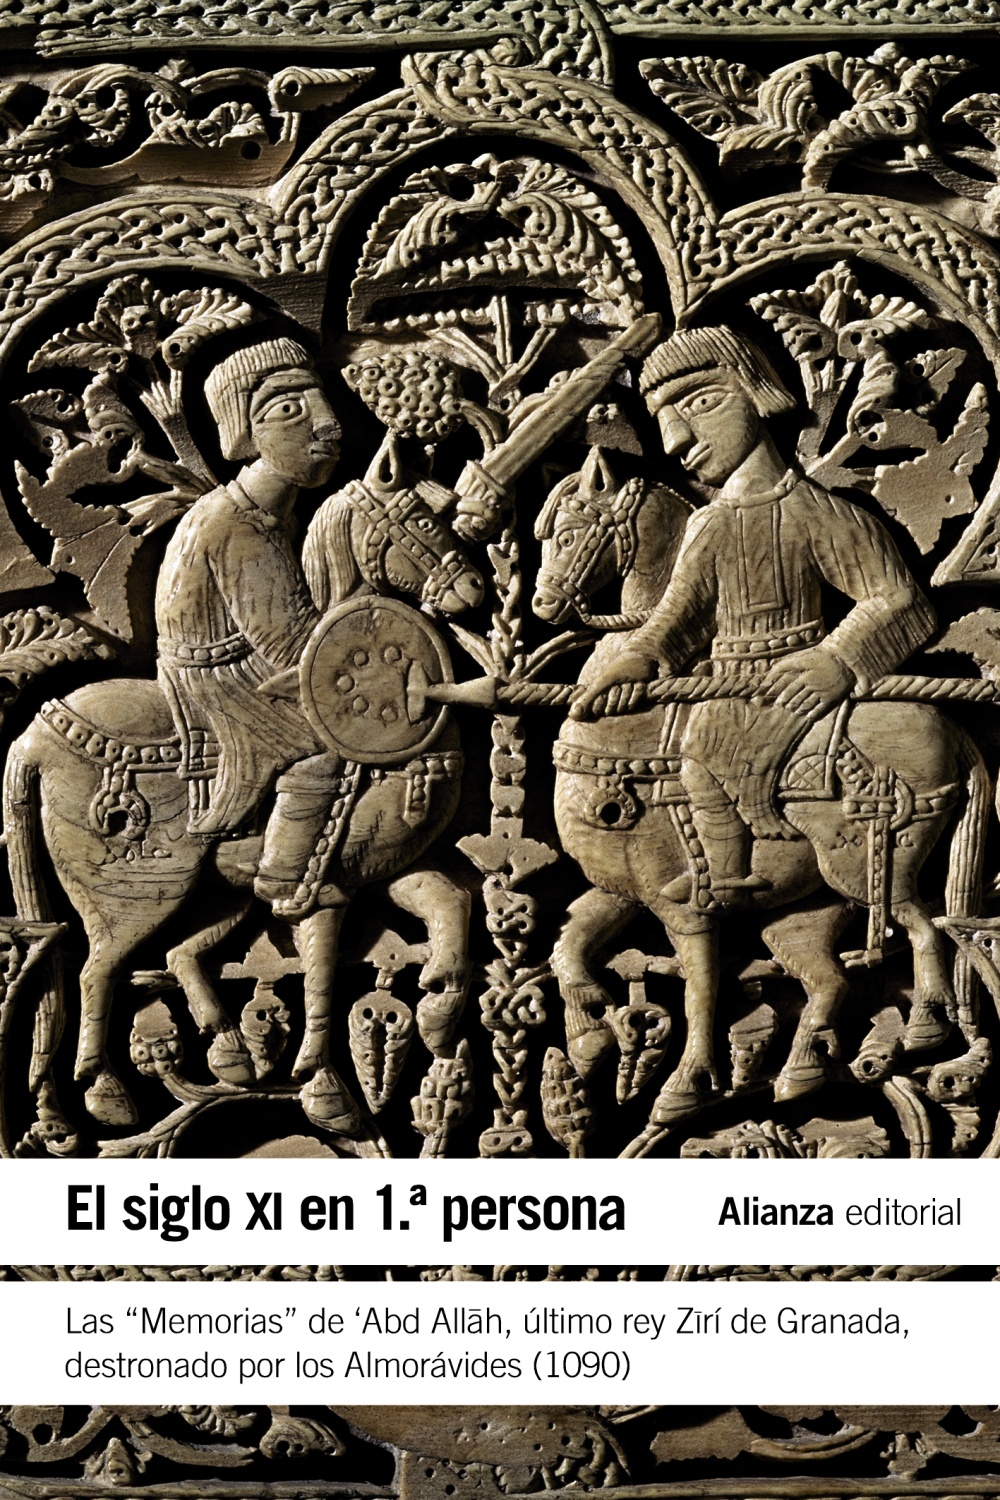 Siglo XI en 1ª persona "Las memorias de Abd Allah, último rey Zirí de Granada, destronado por los Almorávides (1090)"